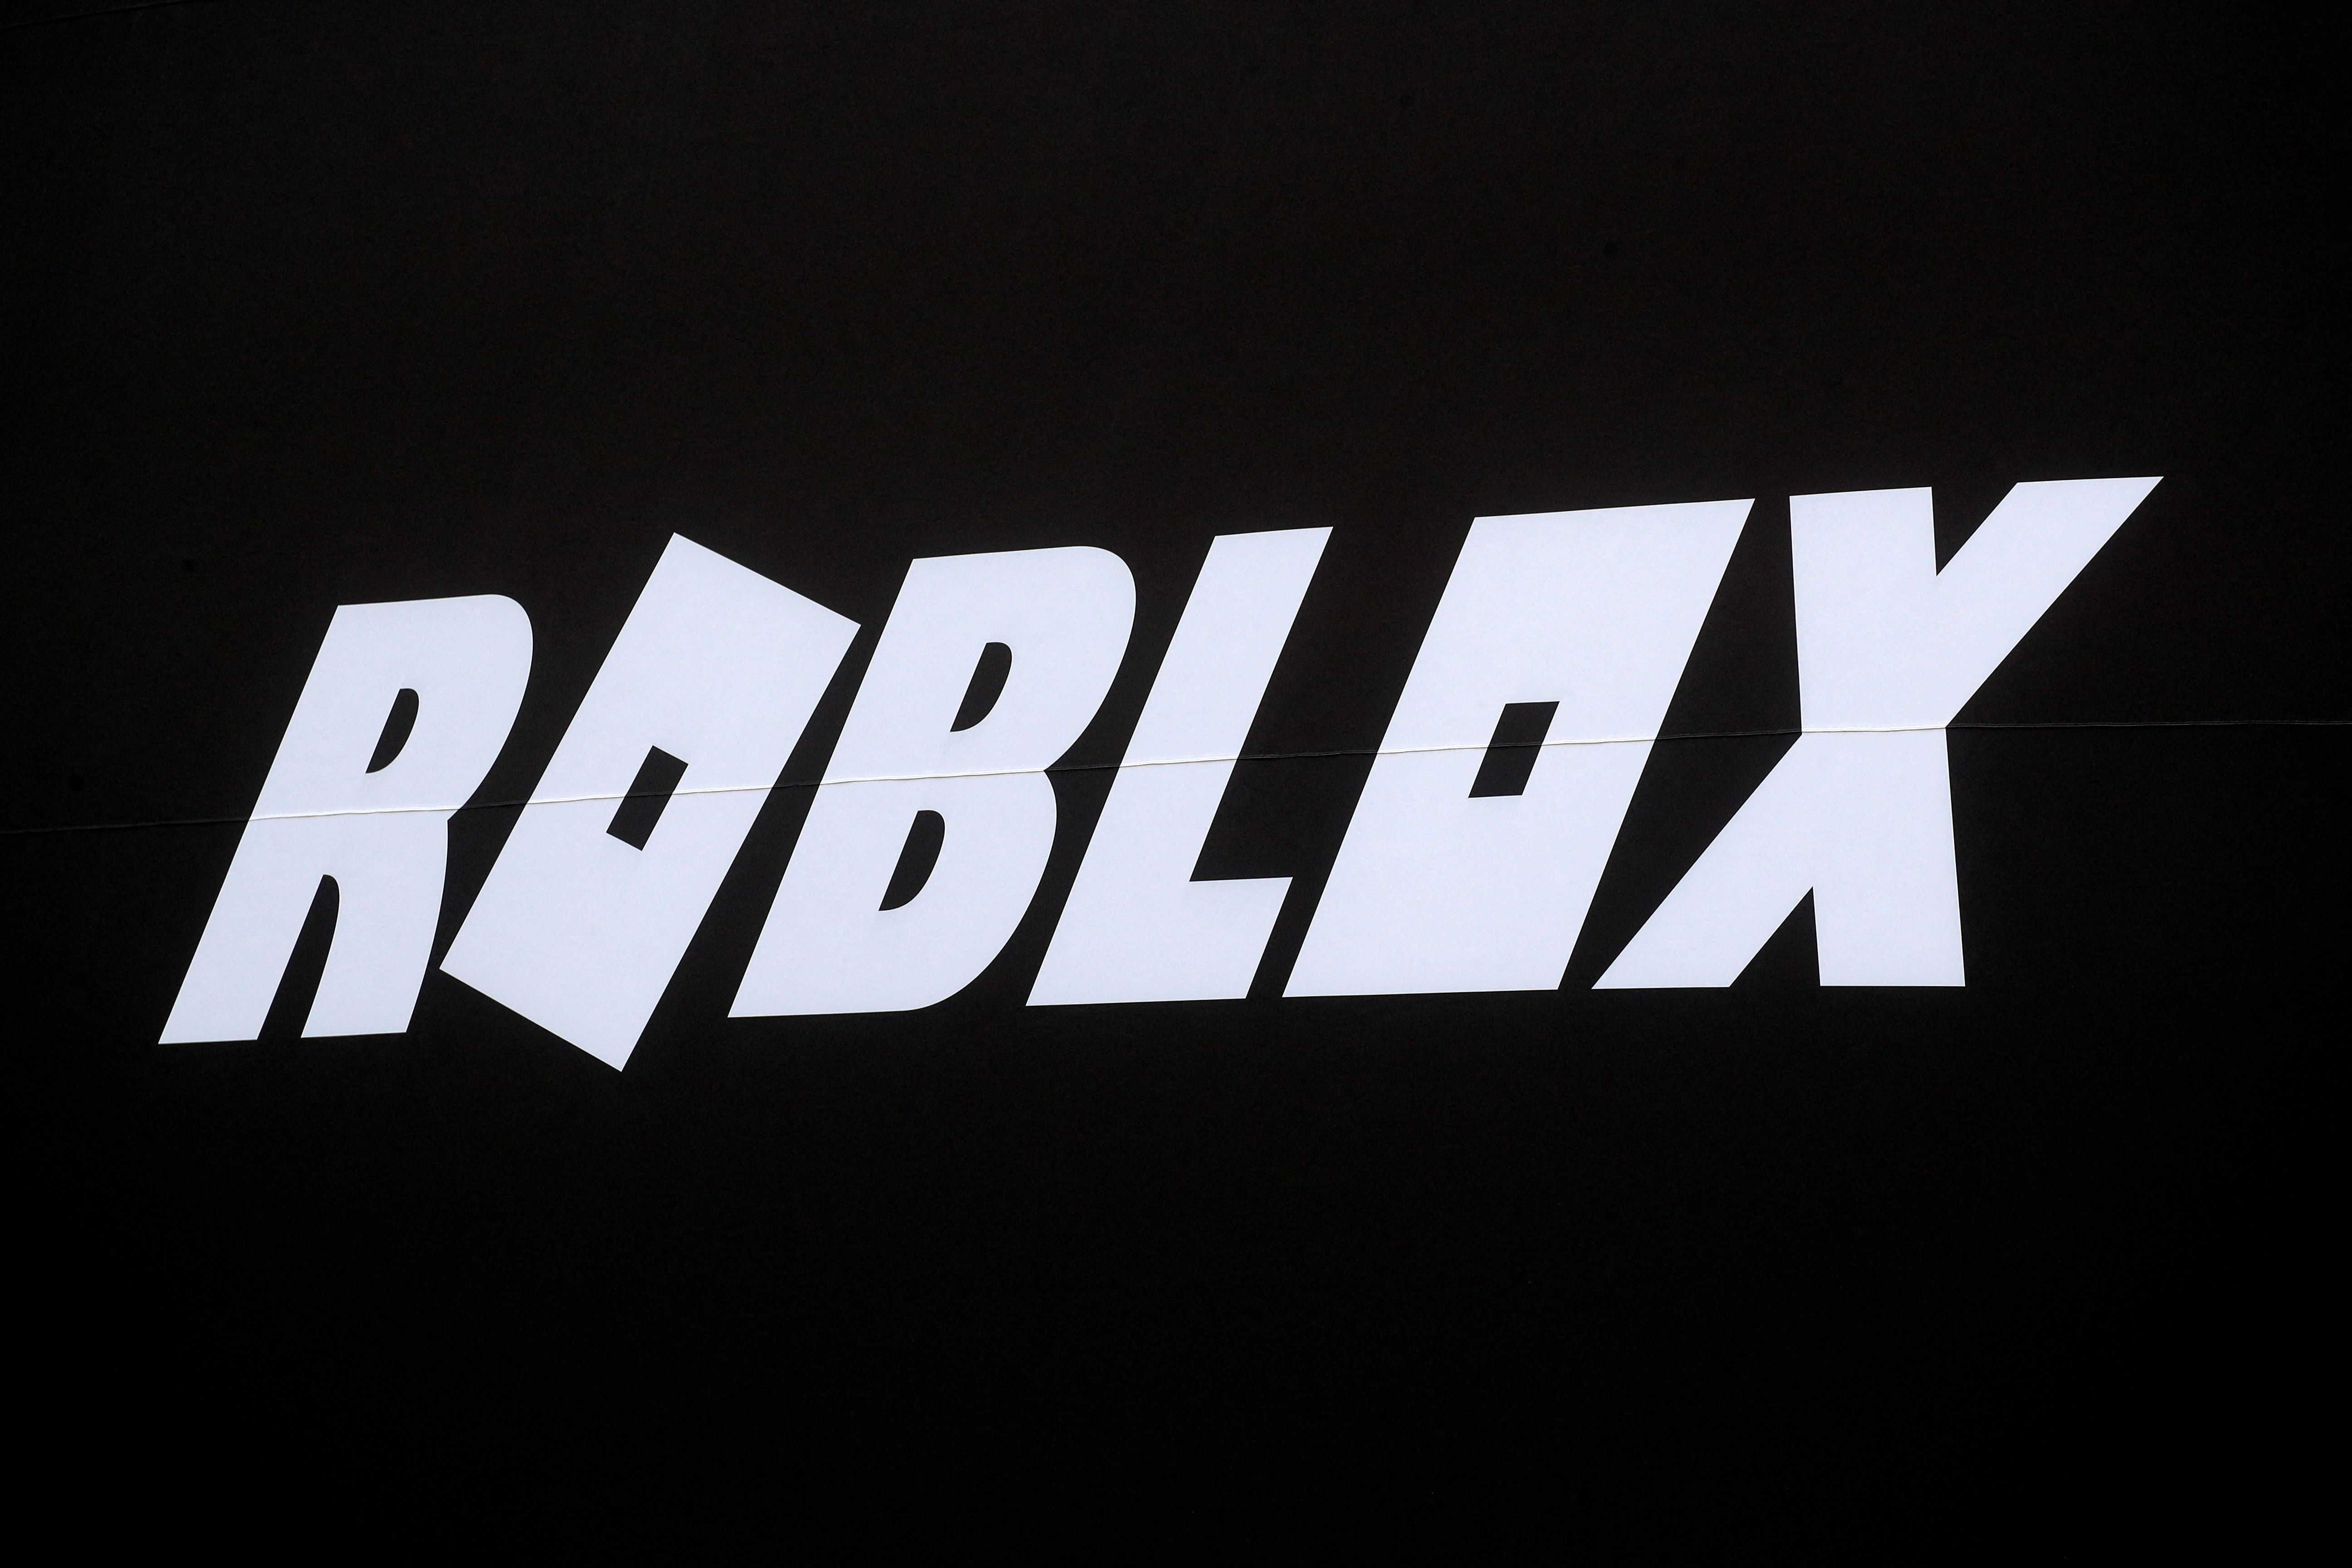 Roblox, la plataforma de videojuegos gobernada por nenes, suma chats de voz